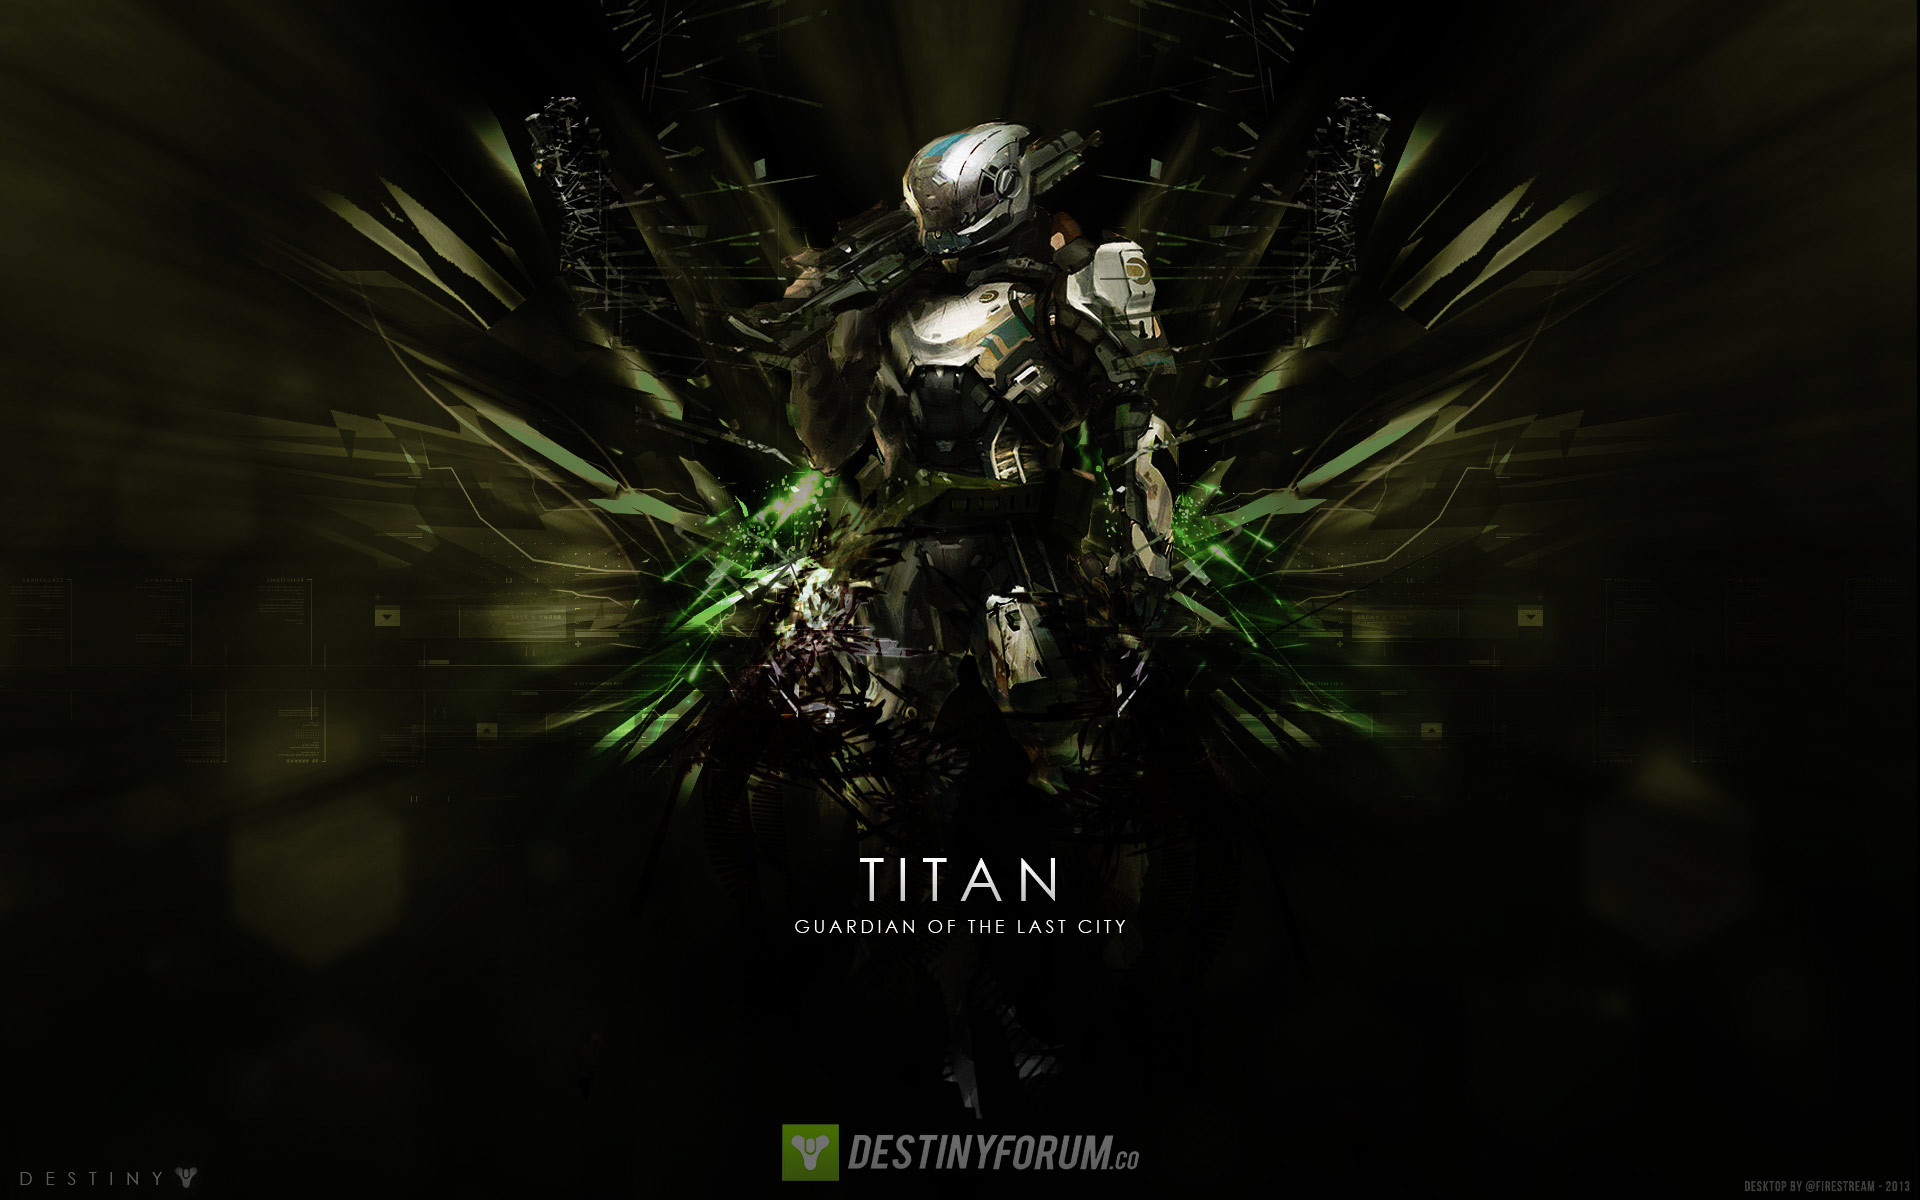 Free Games Destiny Hd Wallpapers Wallpaper - Destiny 2 Titan - HD Wallpaper 